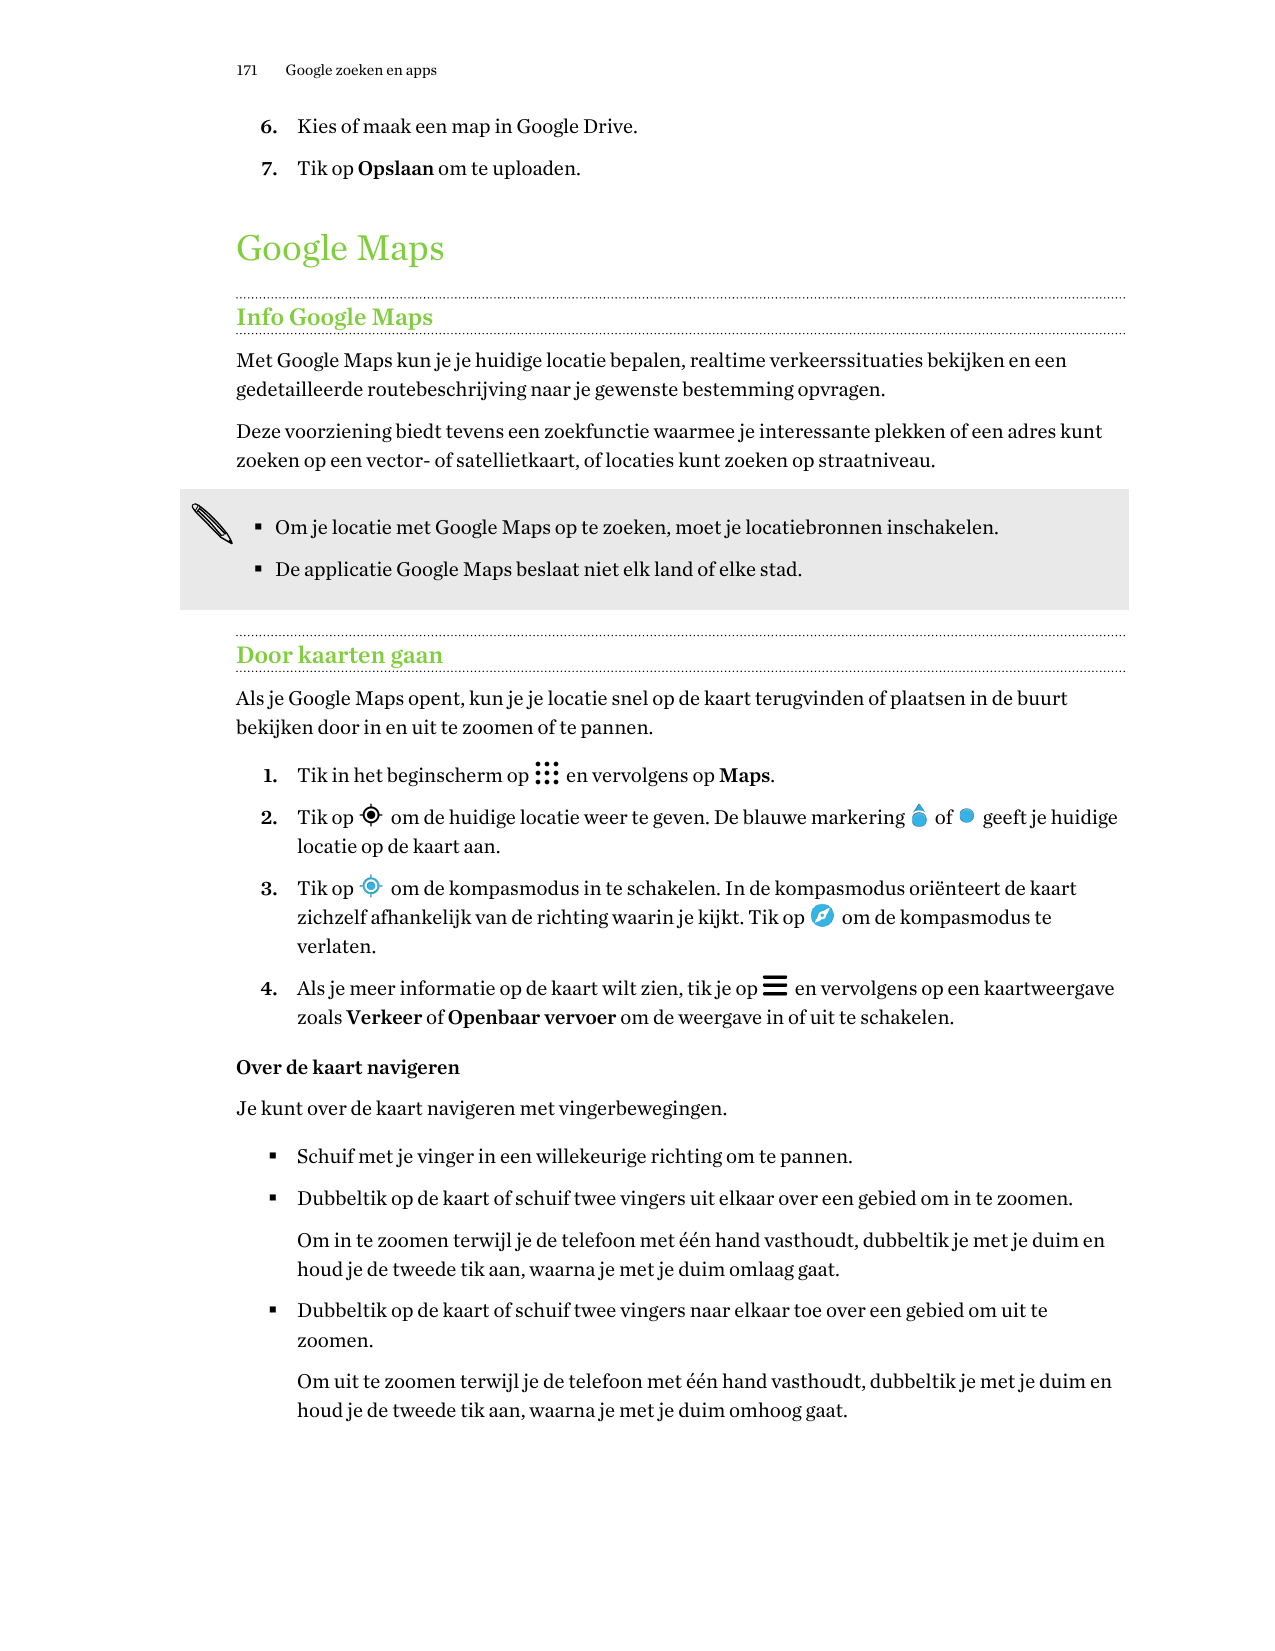 171Google zoeken en apps6. Kies of maak een map in Google Drive.7. Tik op Opslaan om te uploaden.Google MapsInfo Google MapsMet 